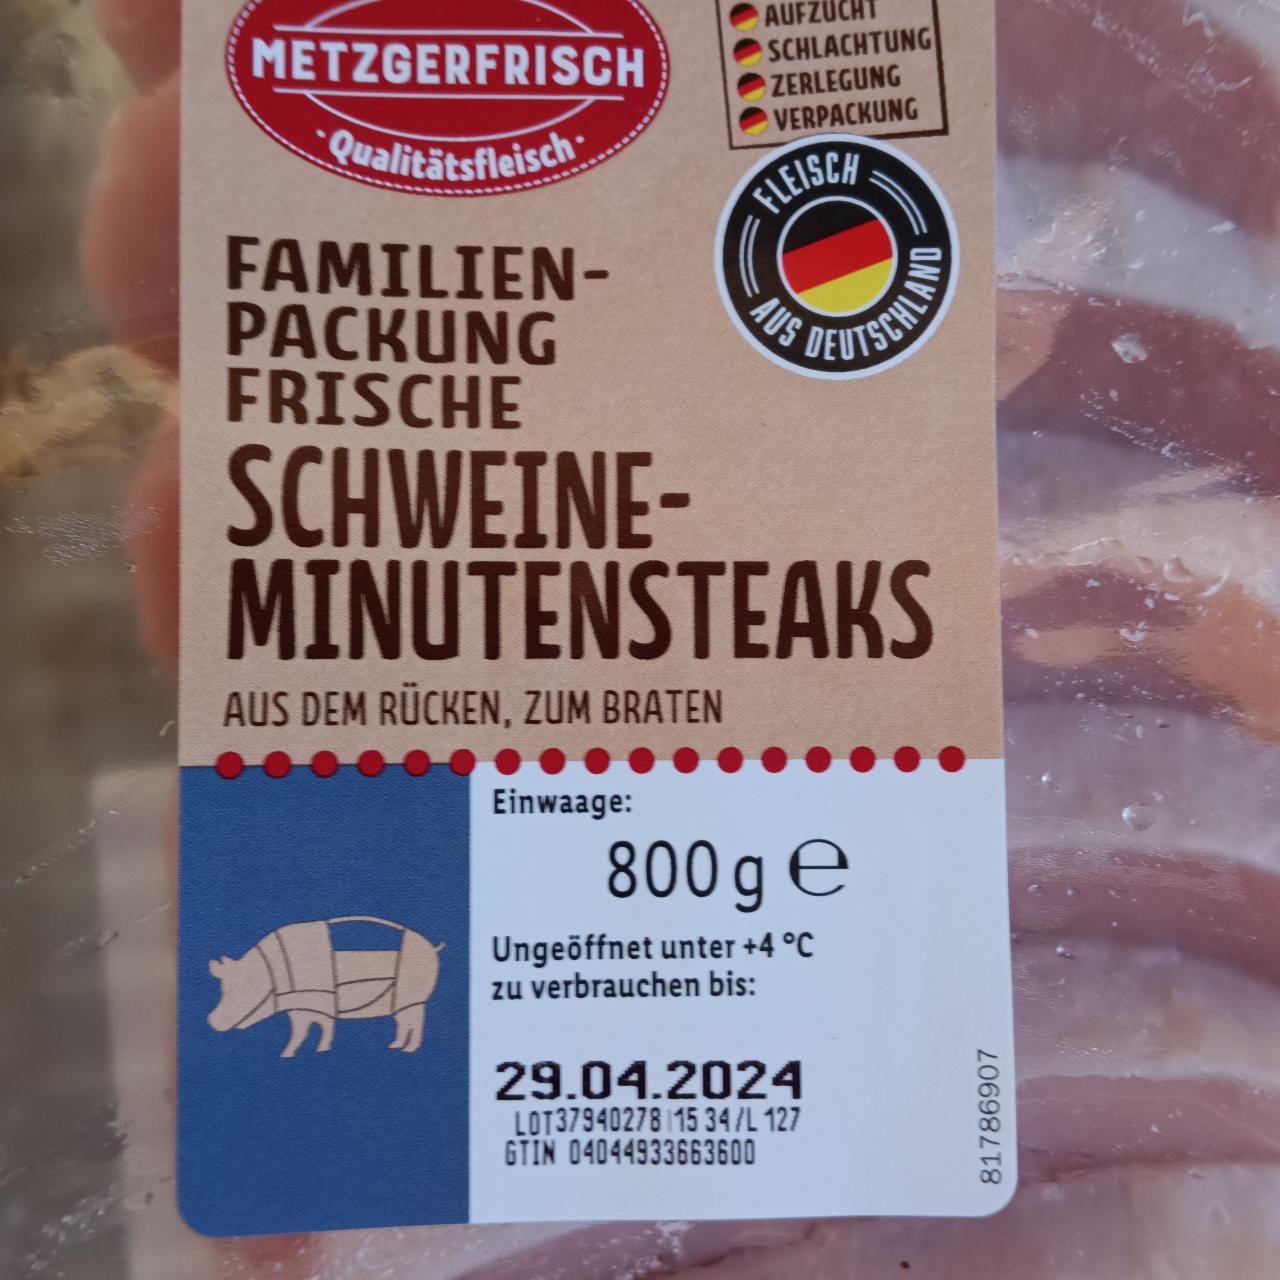 Zdjęcia - Schweine-Minutensteaks Familien Packung Metzgerfrisch